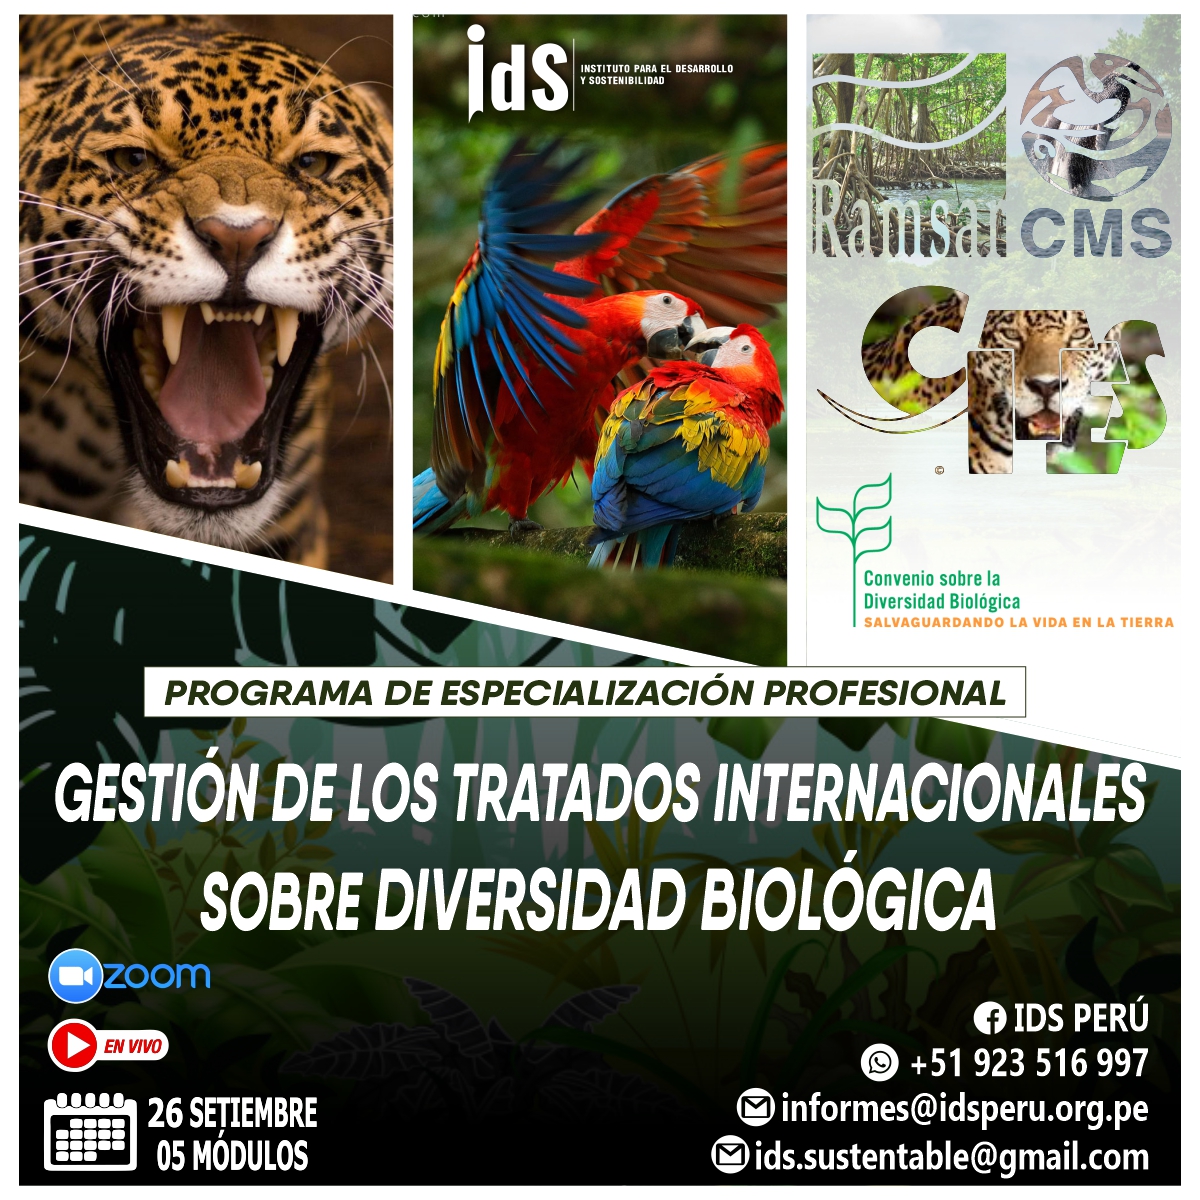 Programa de Especialización Profesional en Gestión de los Tratados Internacionales sobre Diversidad Biológica